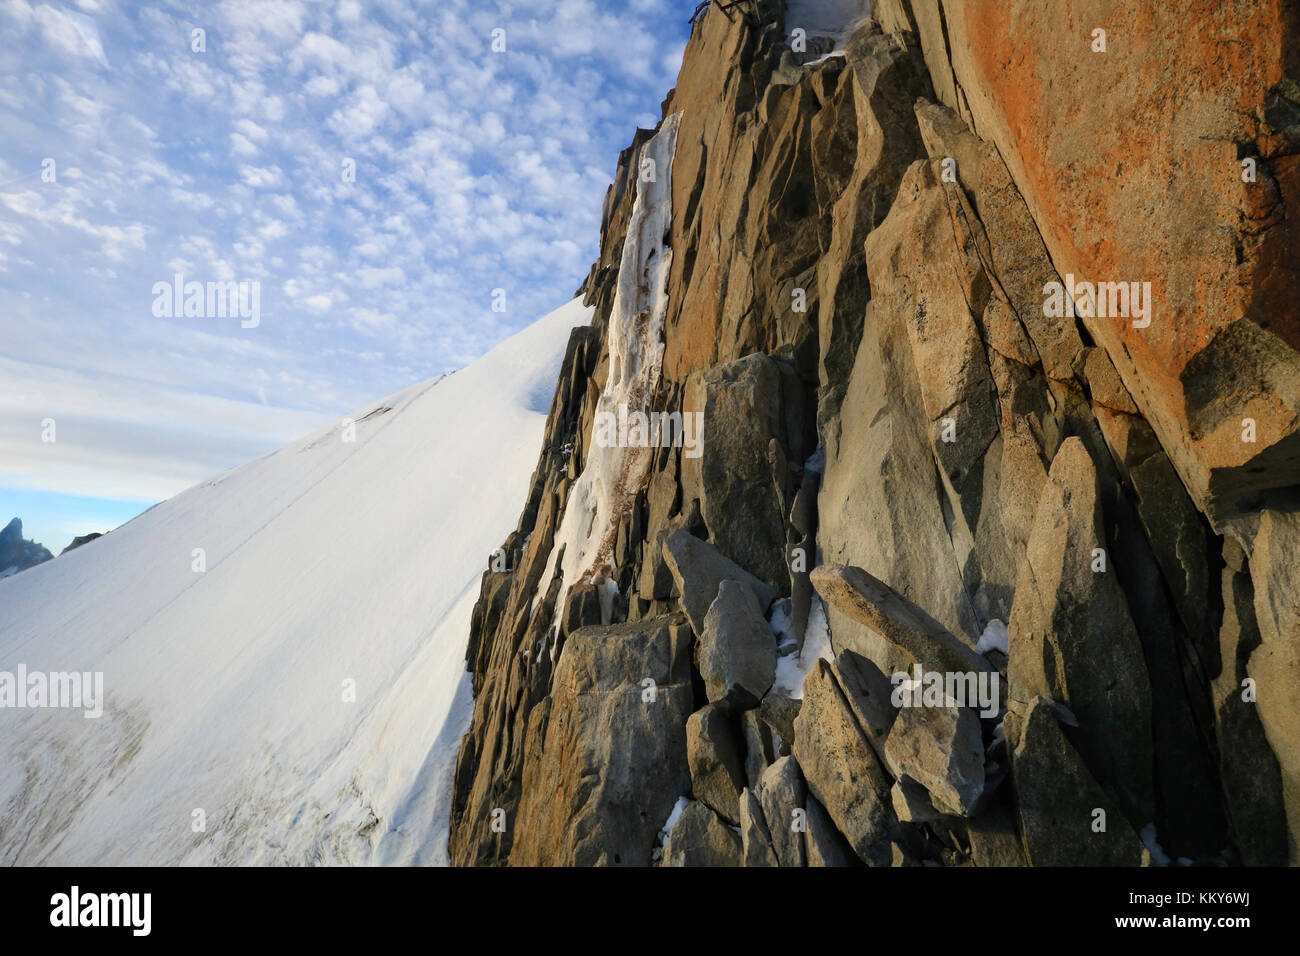 Chamonix Francia, sperone roccioso in cima alla montagna. Foto Stock